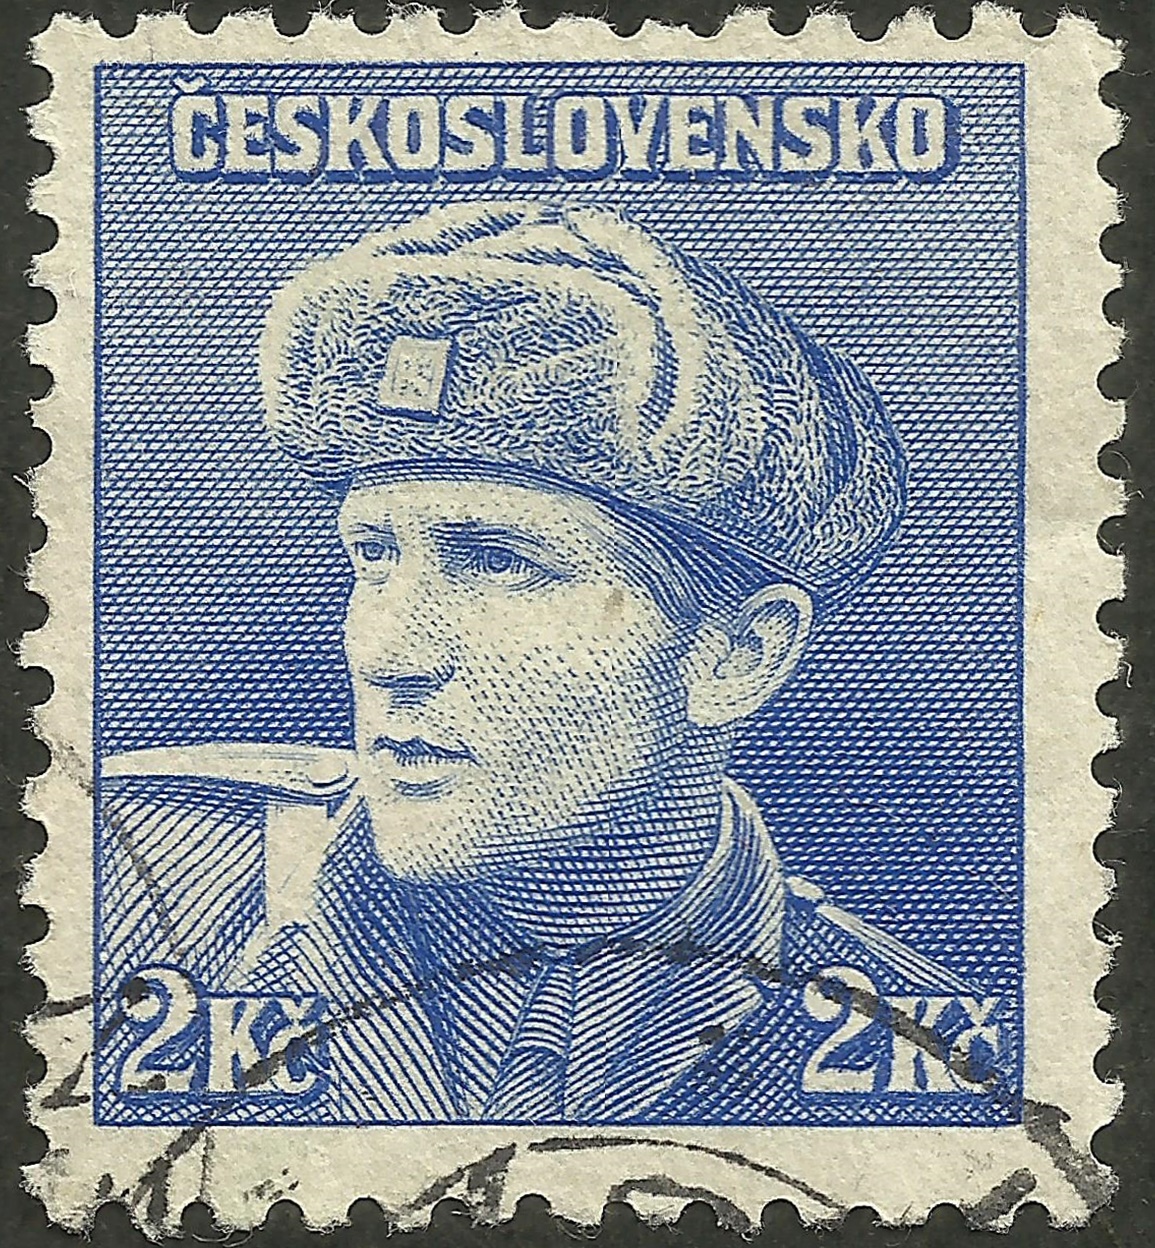 Czechoslovakia - Scott #282 (1945)